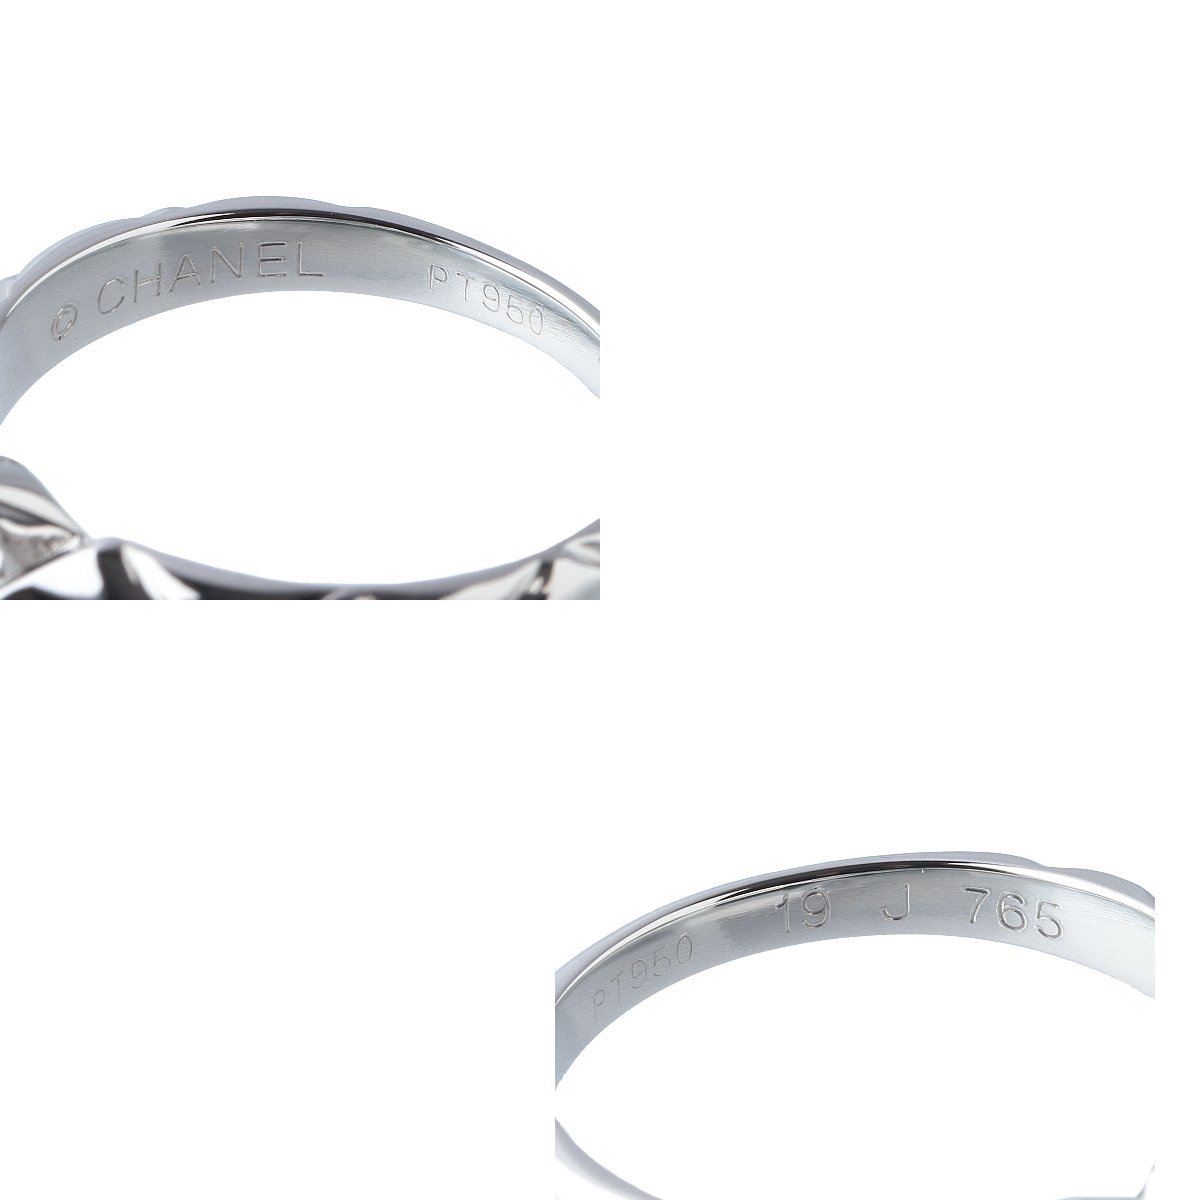  Chanel кольцо с бриллиантом matelasse diamond 0.30ct E-VVS1-G 12 номер слабый PT950 GIA заключение эксперта письменная гарантия коробка новый товар с отделкой CHANEL[13395]